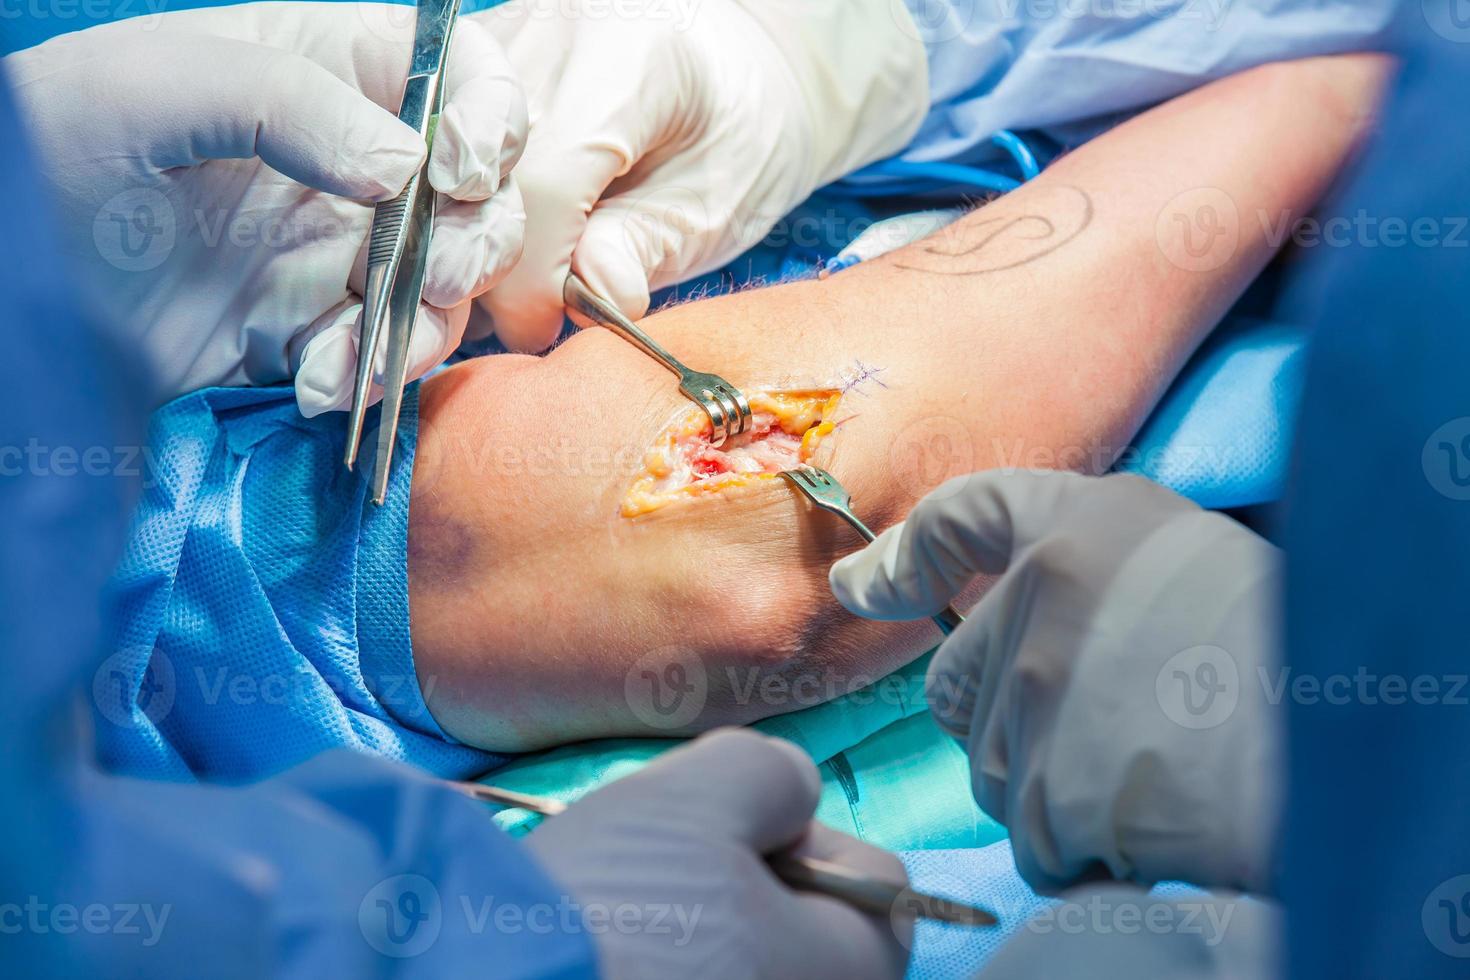 grupo de ortopédico cirujanos ejecutando cirugía en un paciente brazo foto